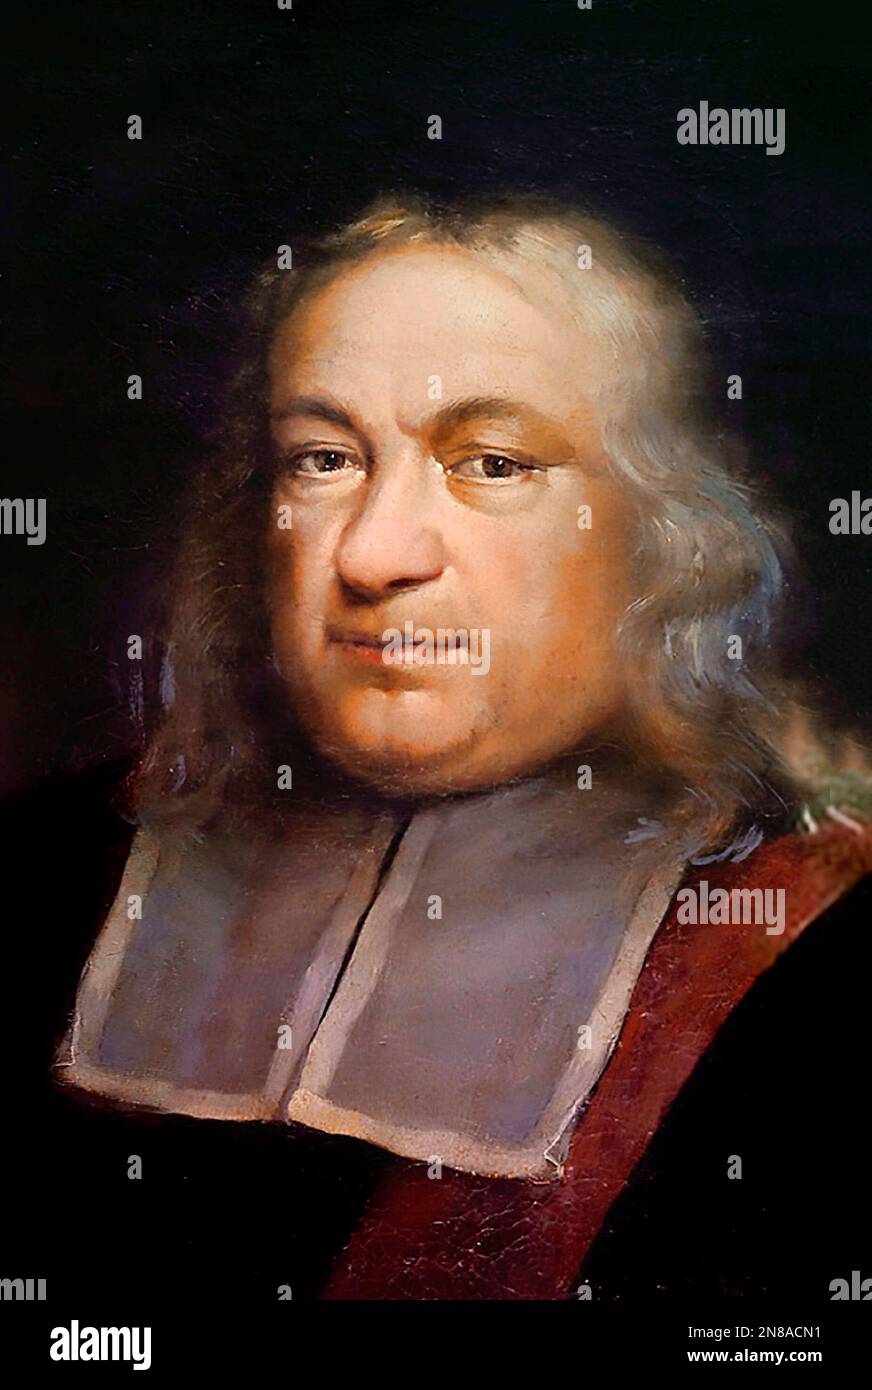 Pierre de Fermat. Portrait of the French mathematician, Pierre de Fermat (1607-1665), anonymous, 17th century Stock Photo